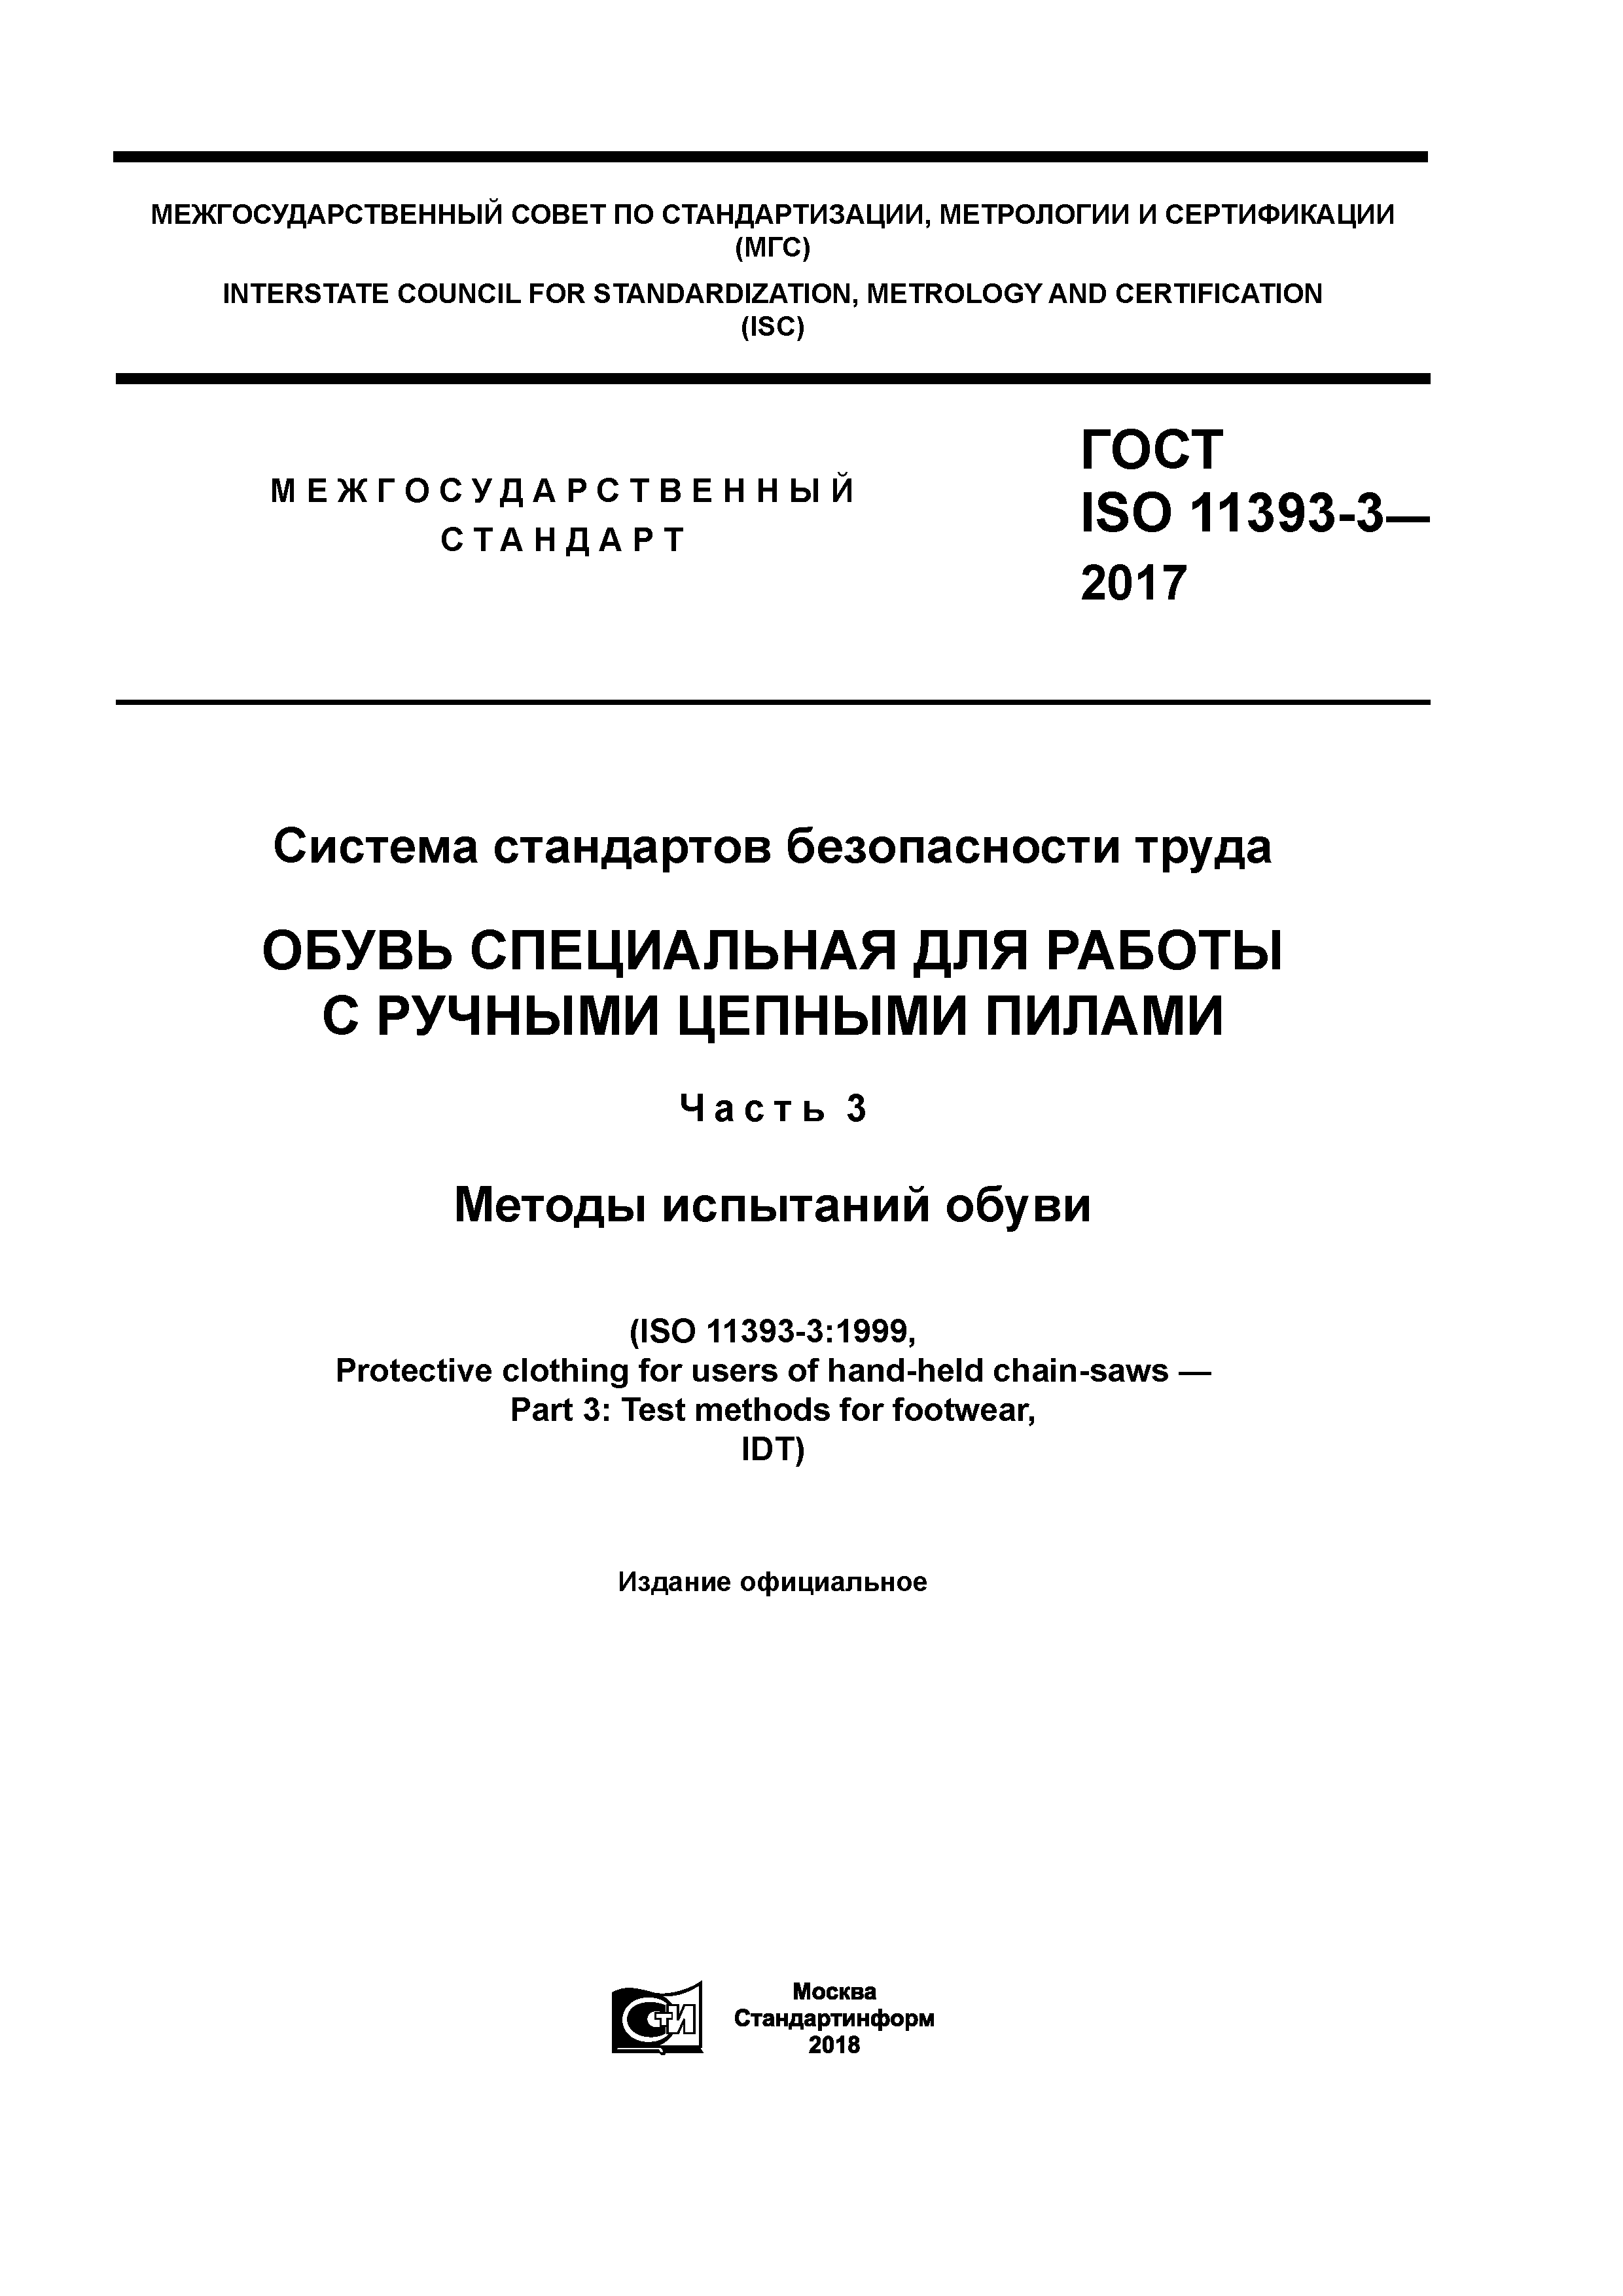 ГОСТ ISO 11393-3-2017